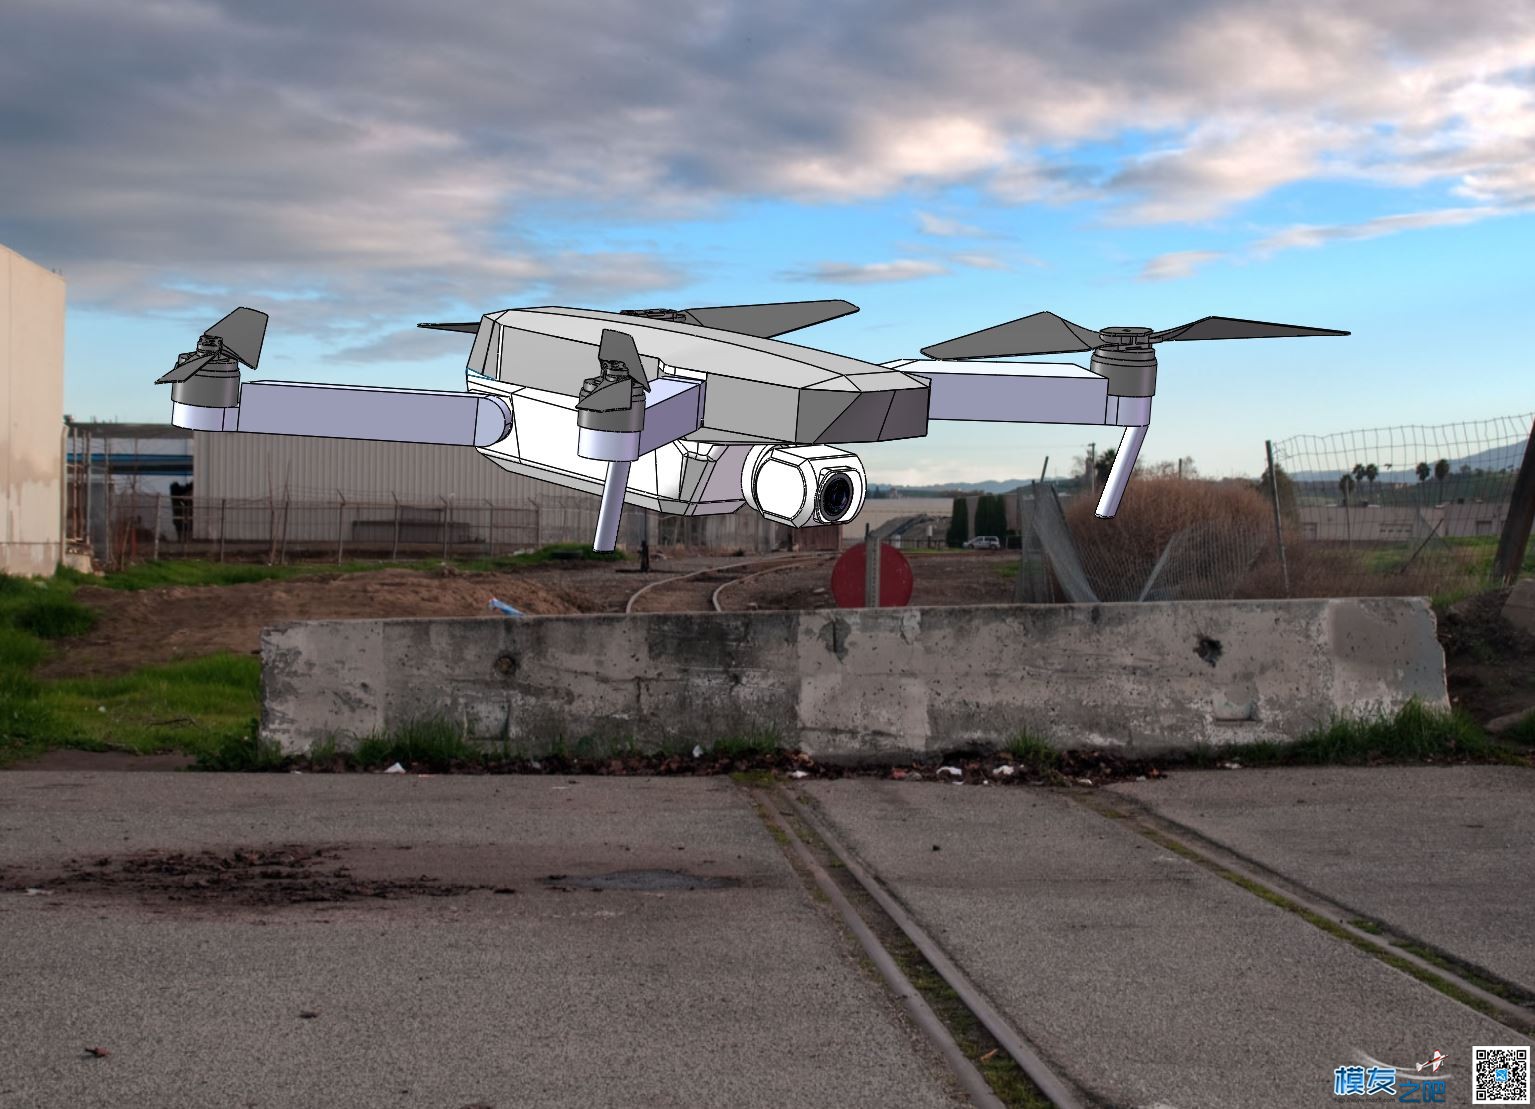 自制大疆mavic折叠无人机 全新设计 慢更 无人机,穿越机,电池,云台,图传 作者:zoney 7793 